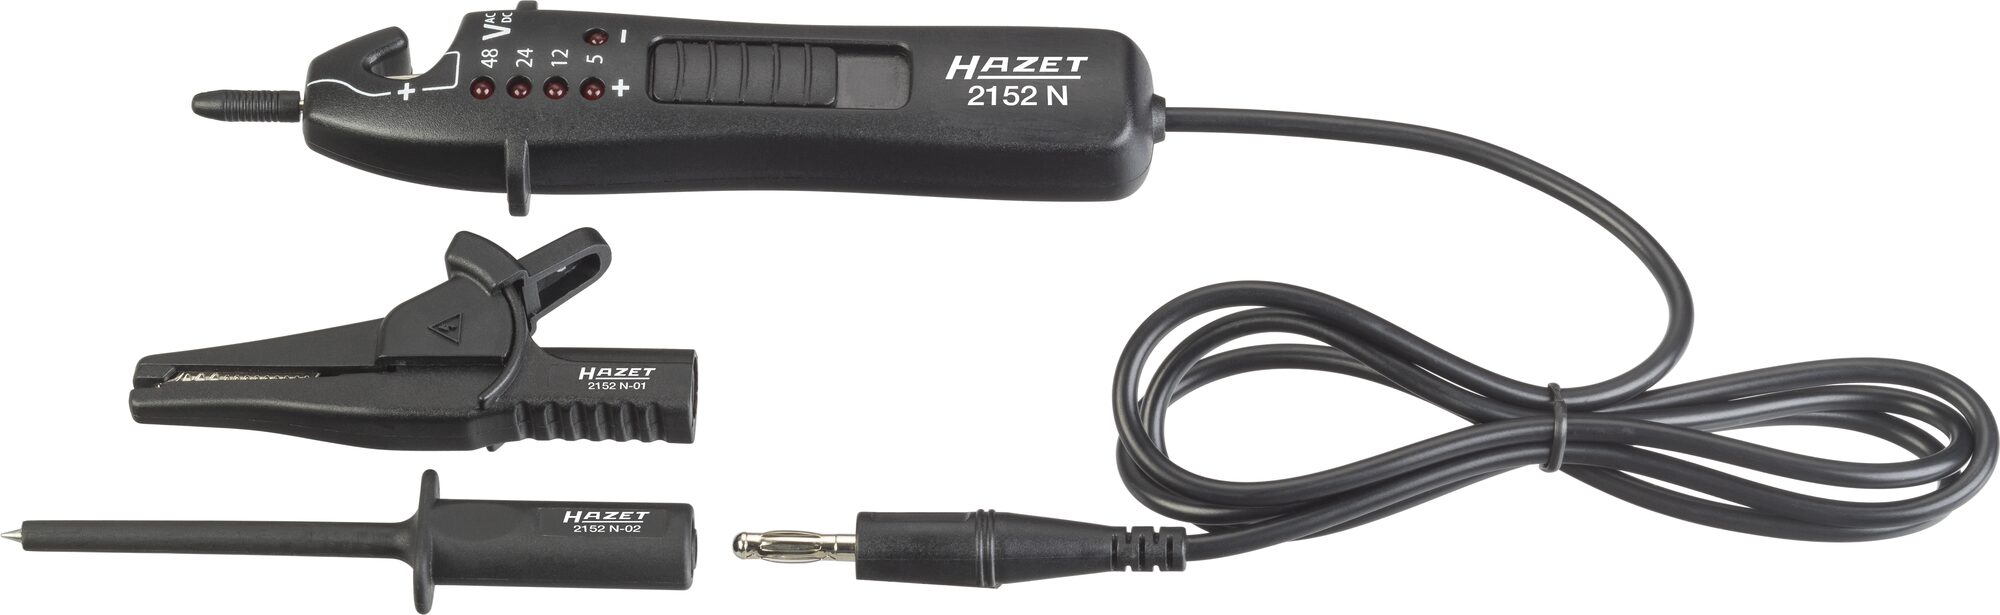 HAZET Elektronik Satz 2152N/3 · Anzahl Werkzeuge: 3